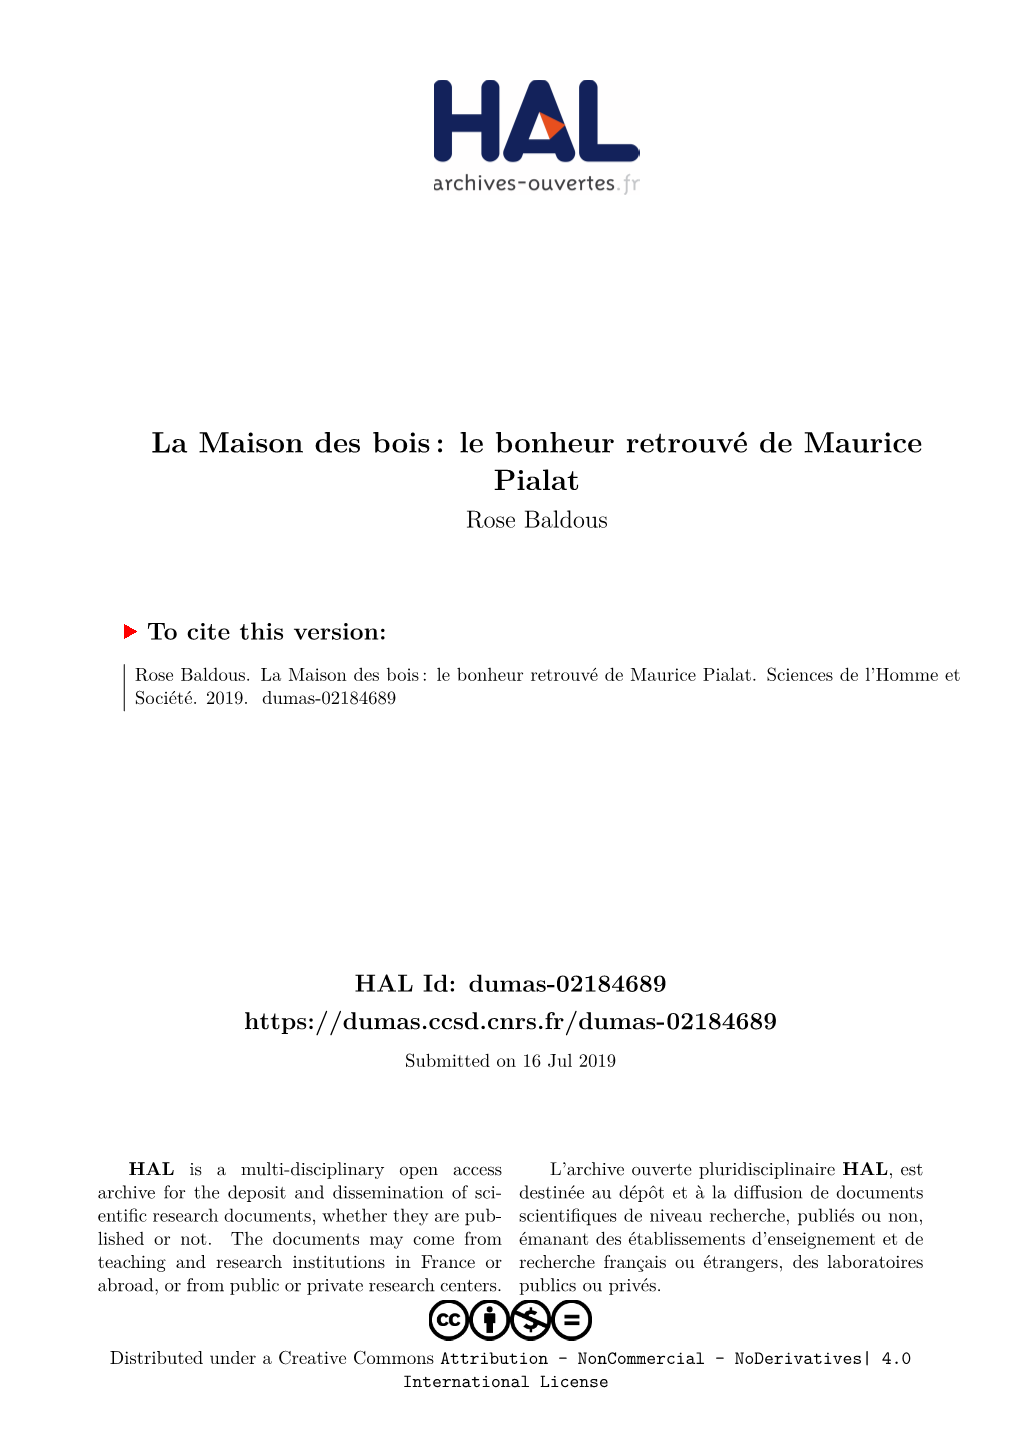 La Maison Des Bois: Le Bonheur Retrouvé De Maurice Pialat